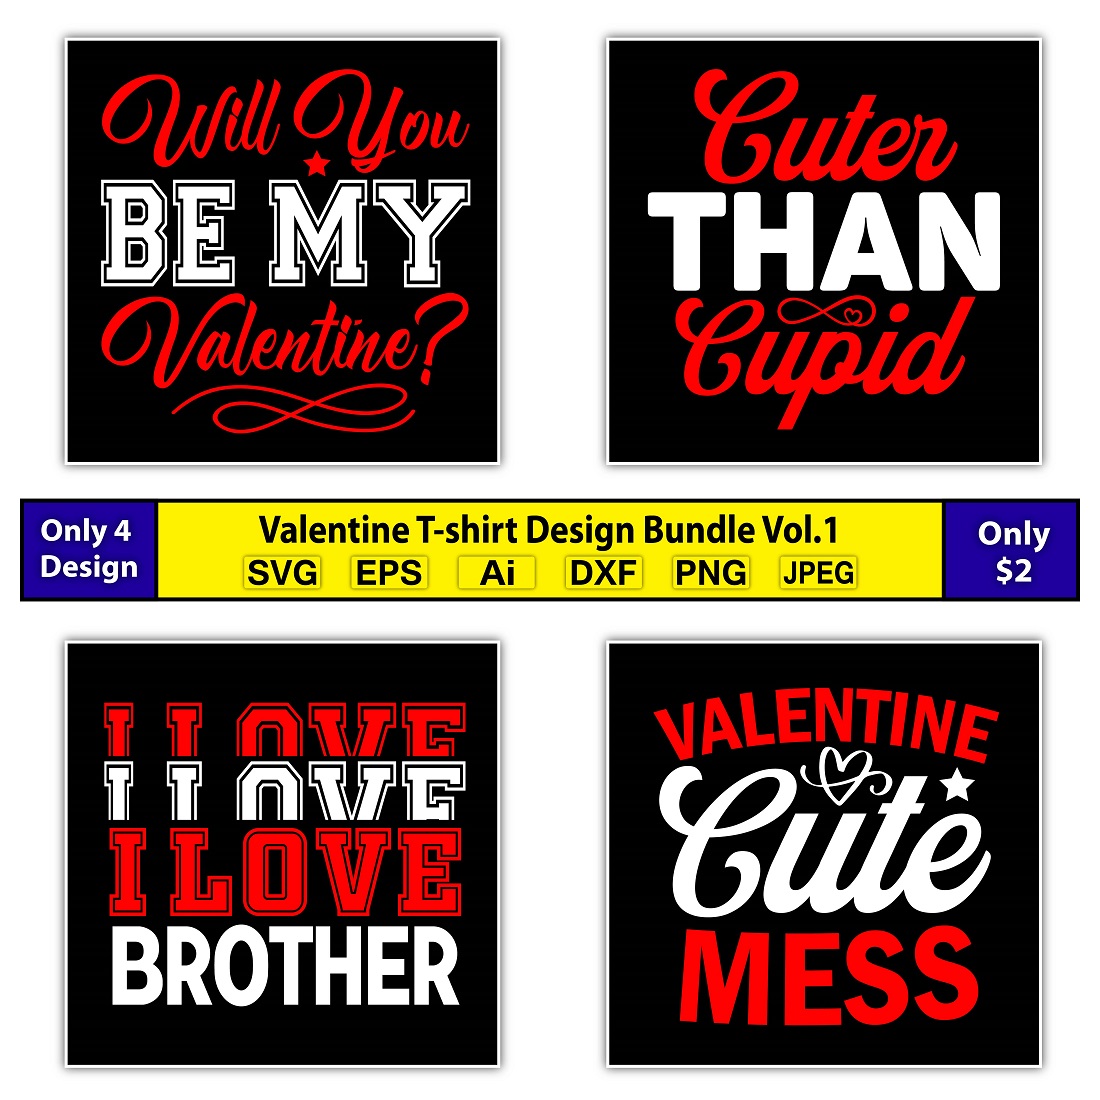 Valentine T-shirt Design Bundle Vol.1 - main image preview.